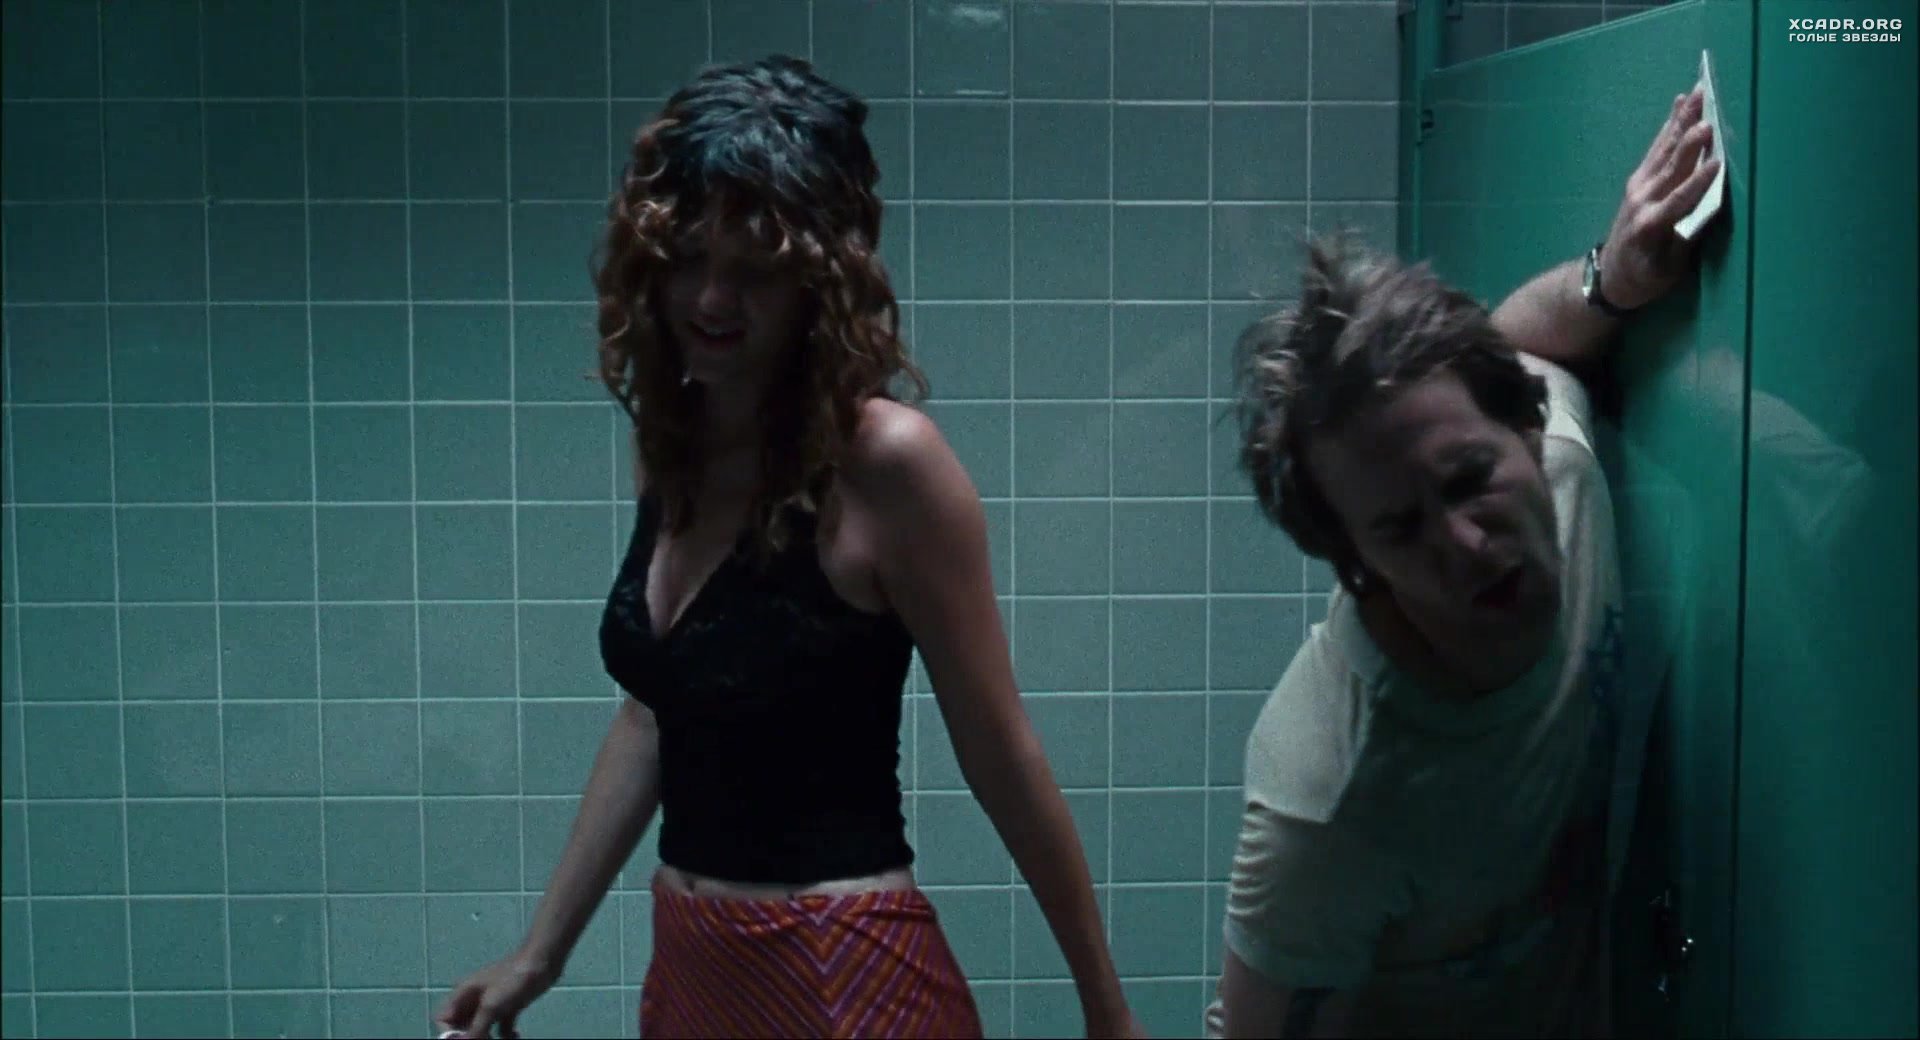 Пьяные девушки мутят с красивым пацаном оргию в ночном заведении в туалете